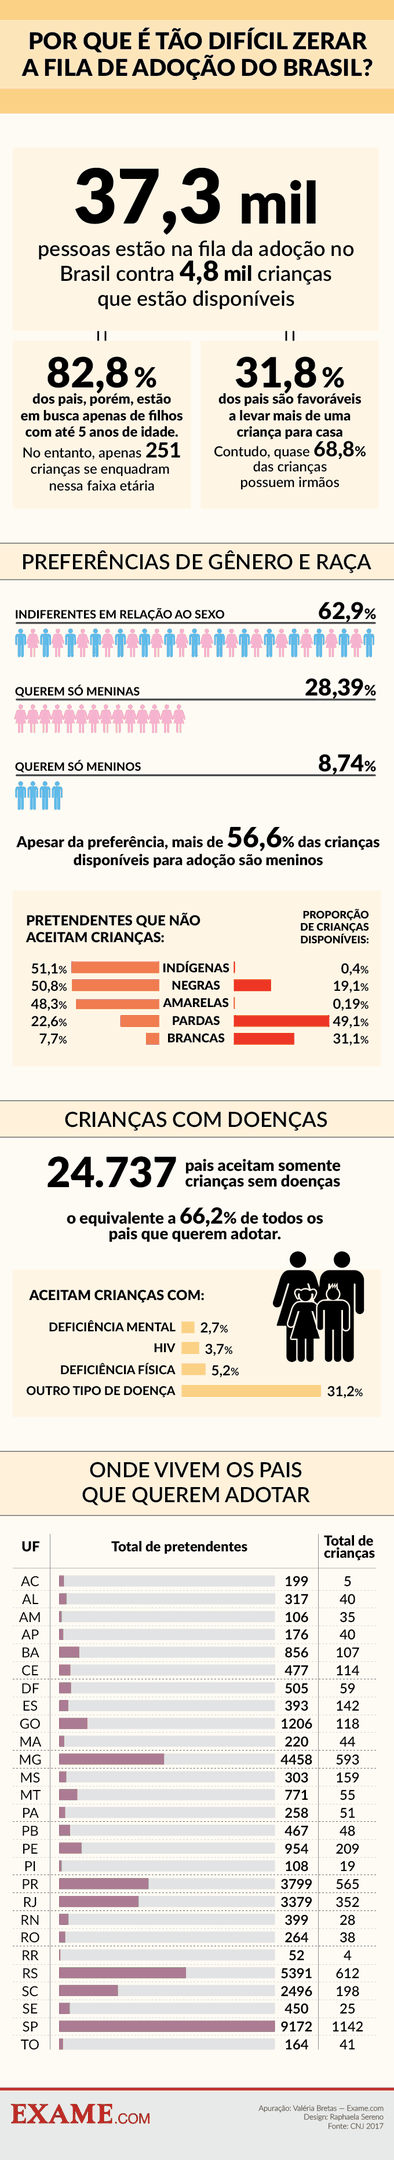 https://exame.com/brasil/ex-chefe-da-oas-alega-que-lula-orientou-destruir-provas-diz-veja/